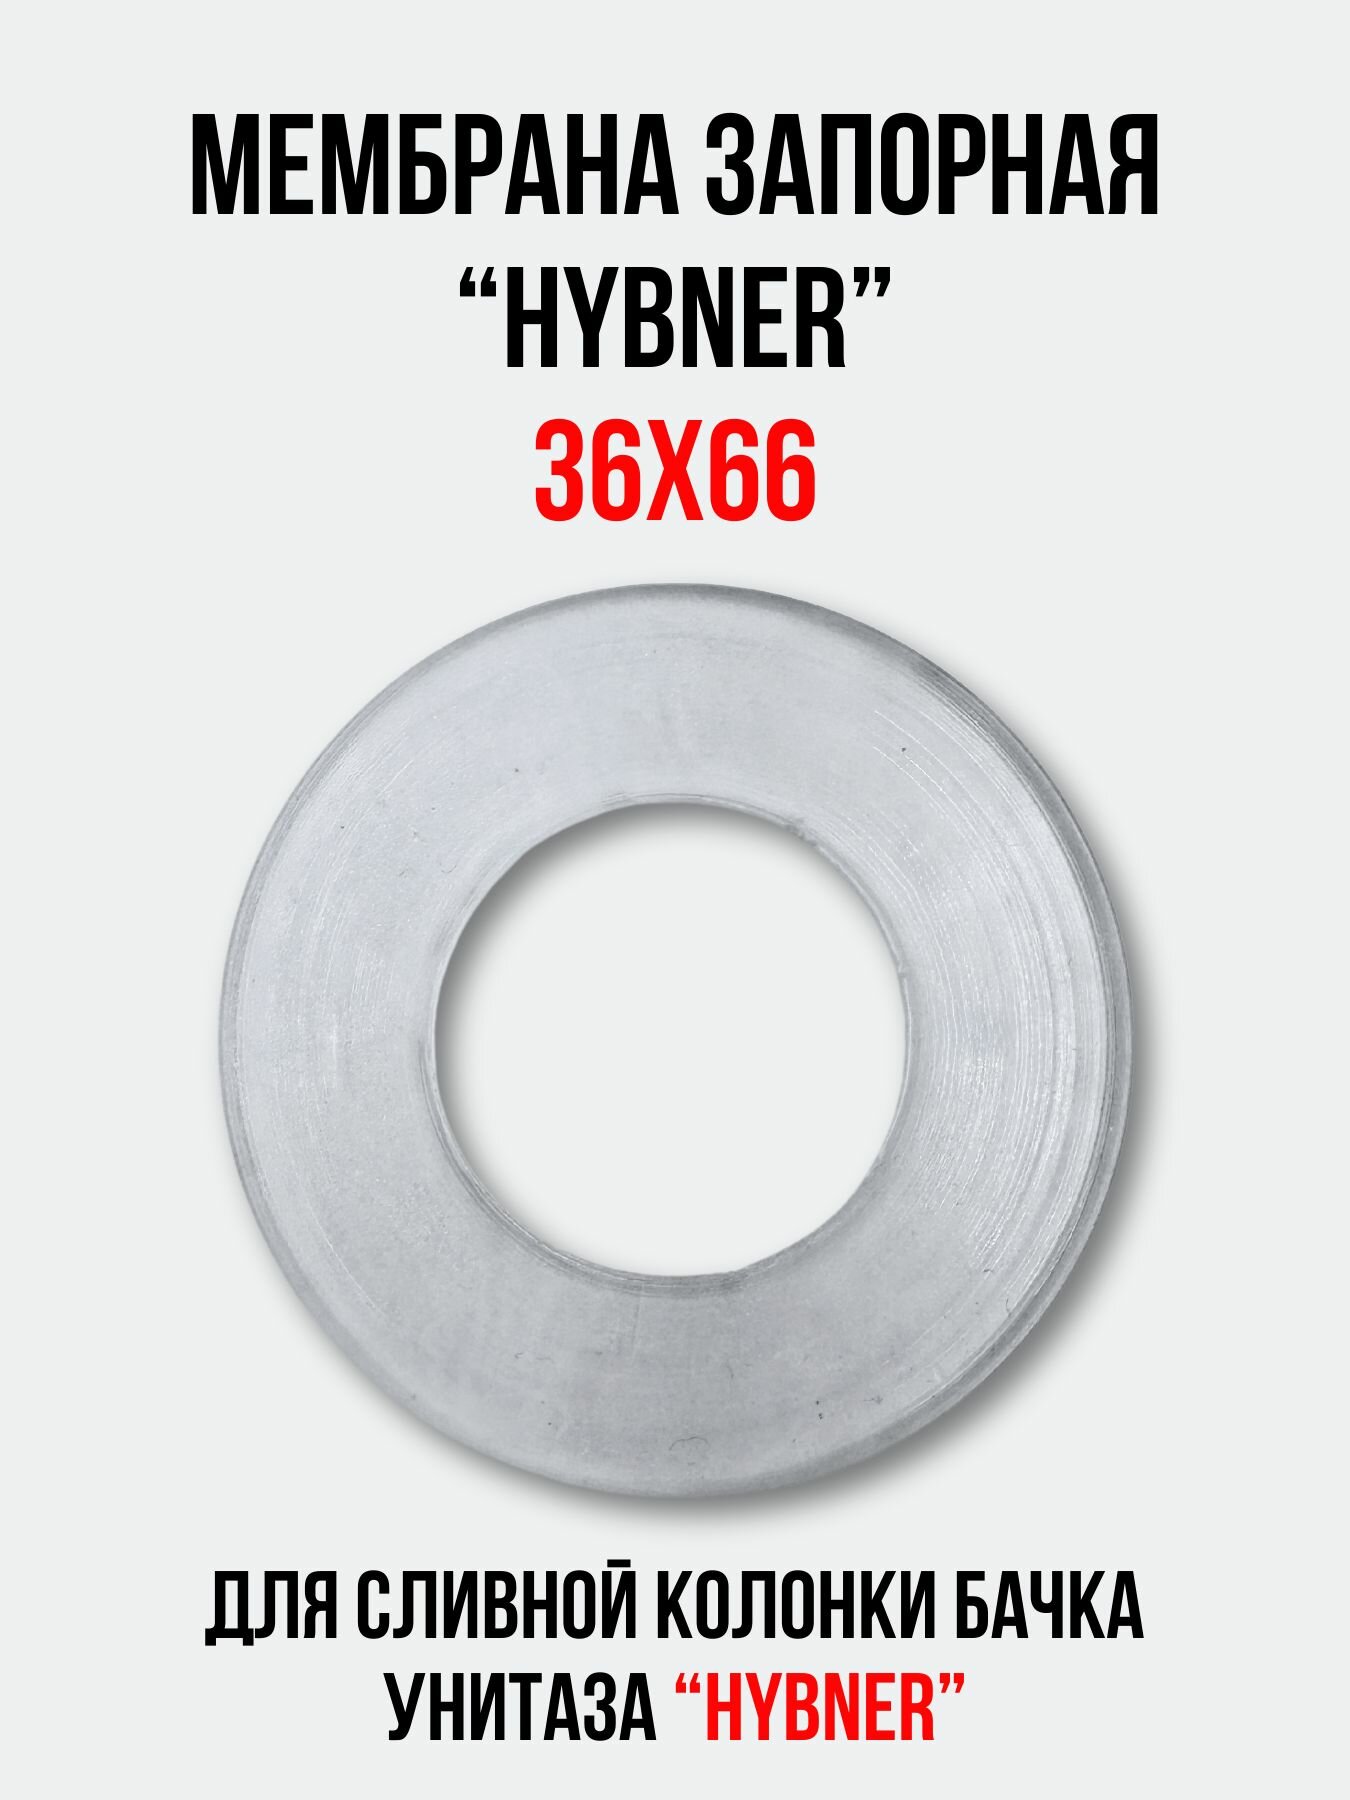 Мембрана запорная 36х66 для арматуры 'HYBNER' сливной колонки бачка унитаза